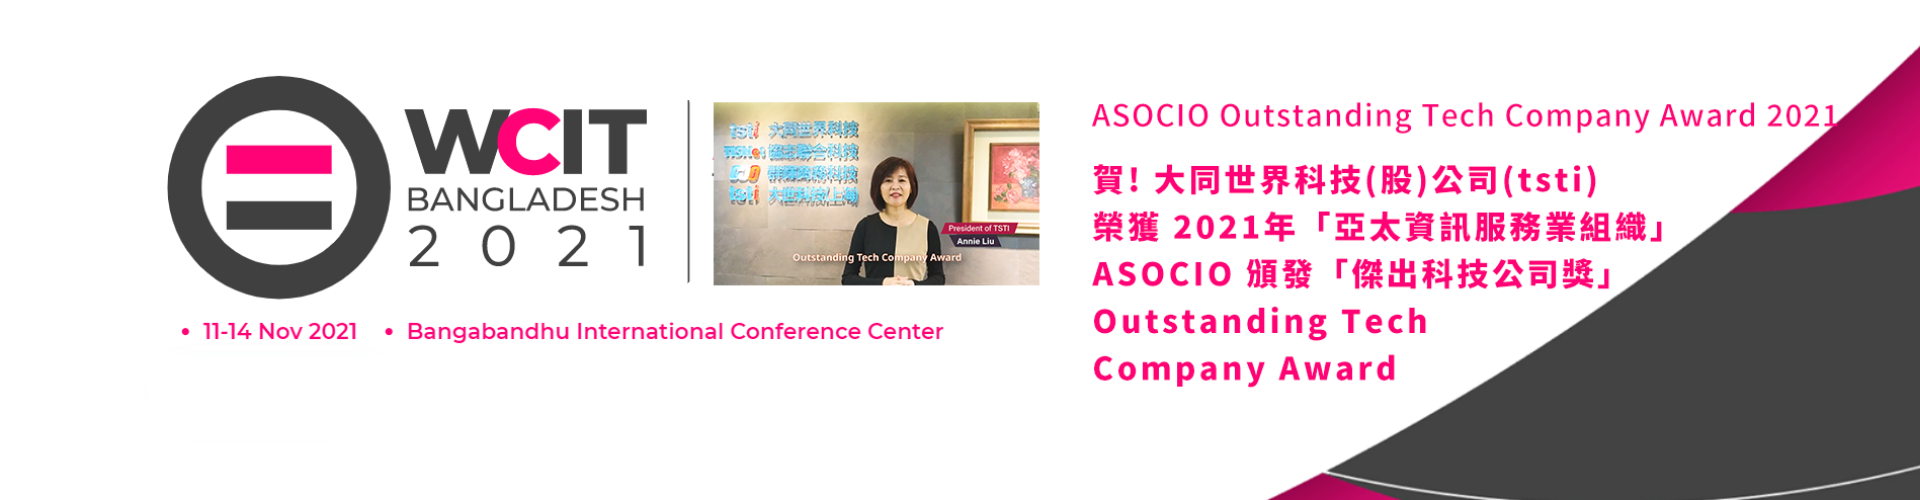 大世科-大世科 (tsti) 榮獲「2021 ASOCIO傑出科技公司獎」 (ASOCIO Outstanding Tech Company Award 2021)